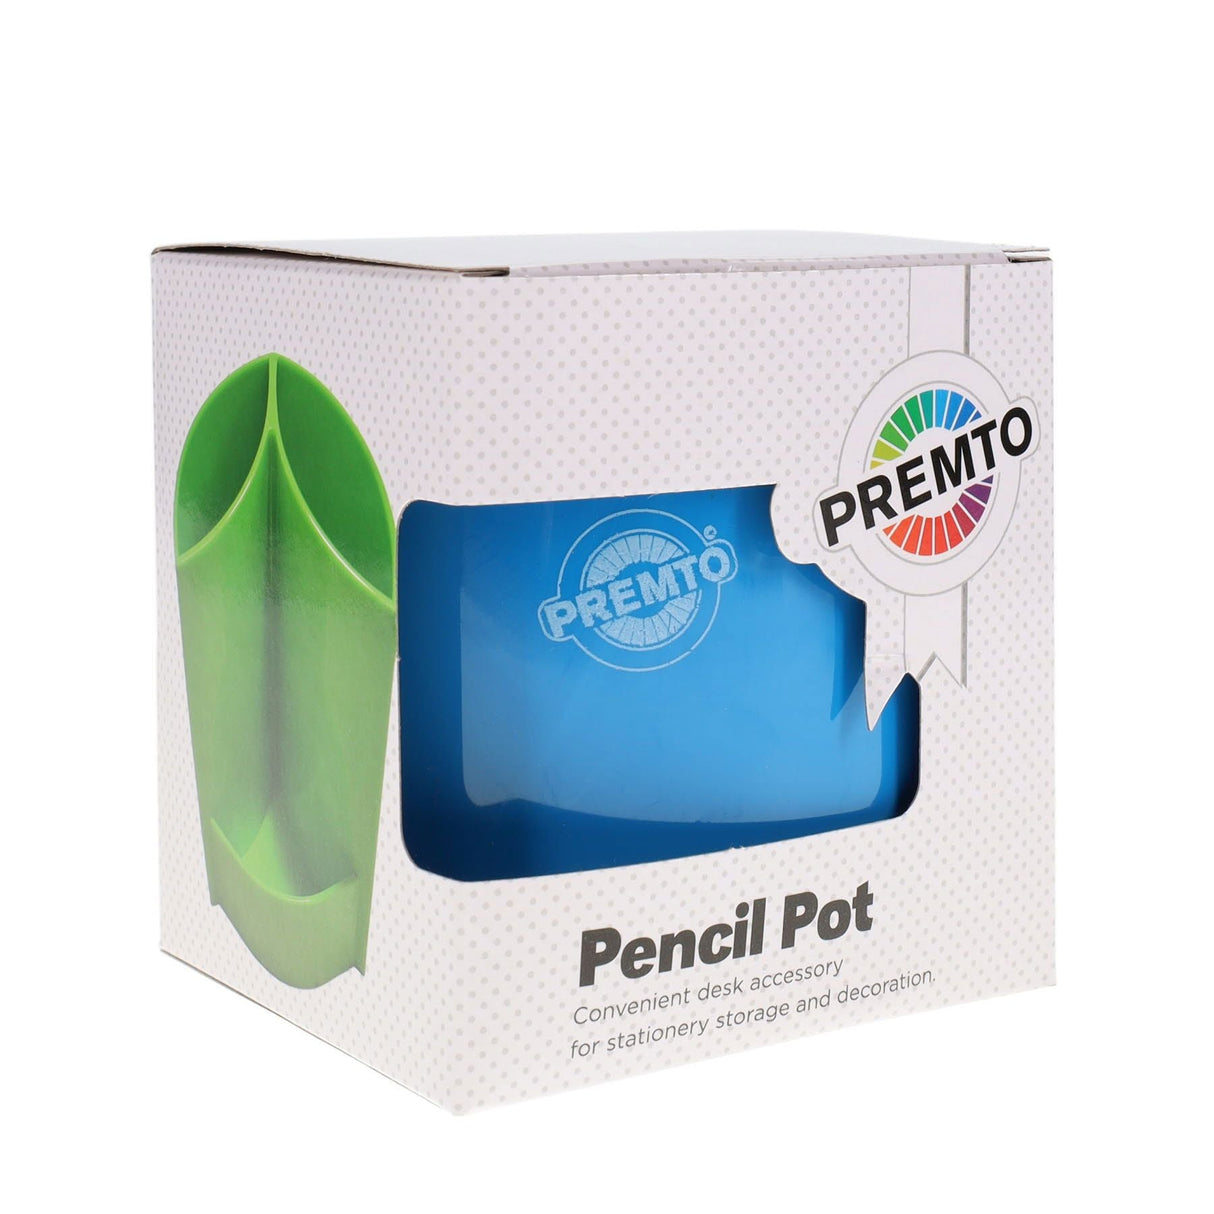 Premto Pen Pot - Printer Blue | Stationery Shop UK